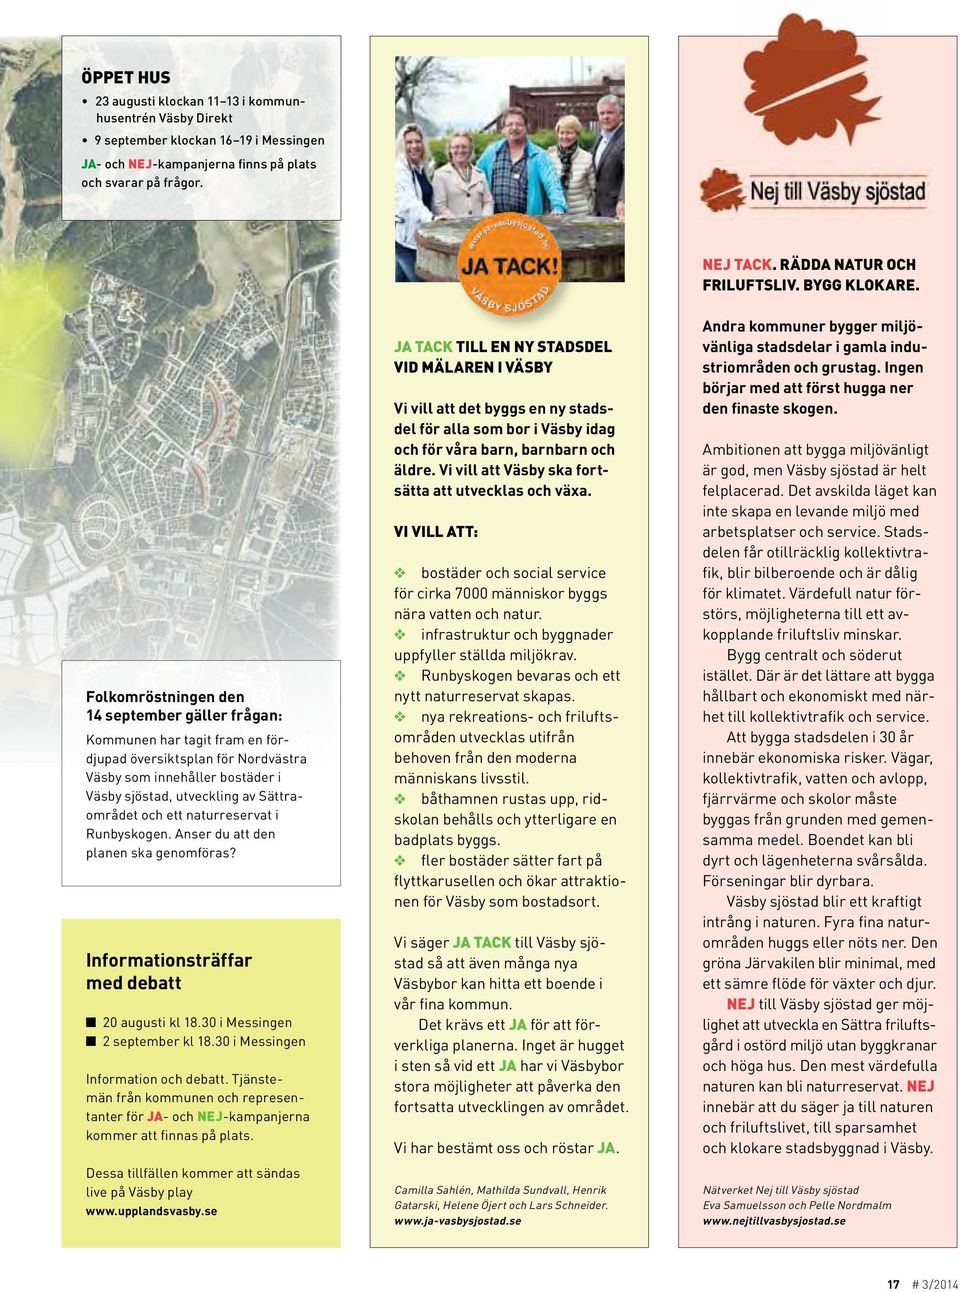 Folkomröstningen den 14 september gäller frågan: Kommunen har tagit fram en fördjupad översiktsplan för Nordvästra Väsby som innehåller bostäder i Väsby sjöstad, utveckling av Sättraområdet och ett